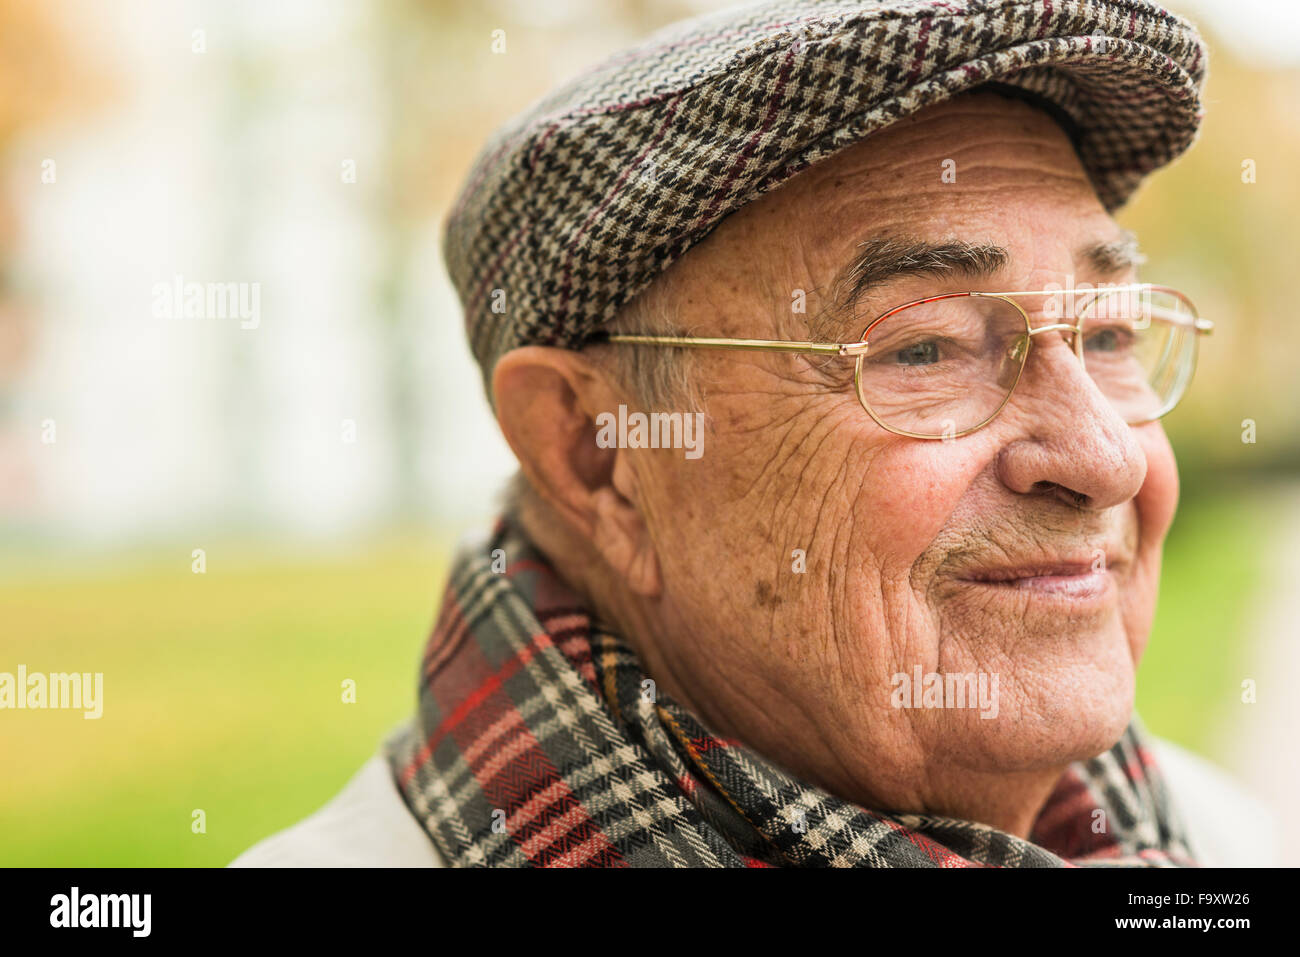 Smiling senior man outdoors Stock Photo